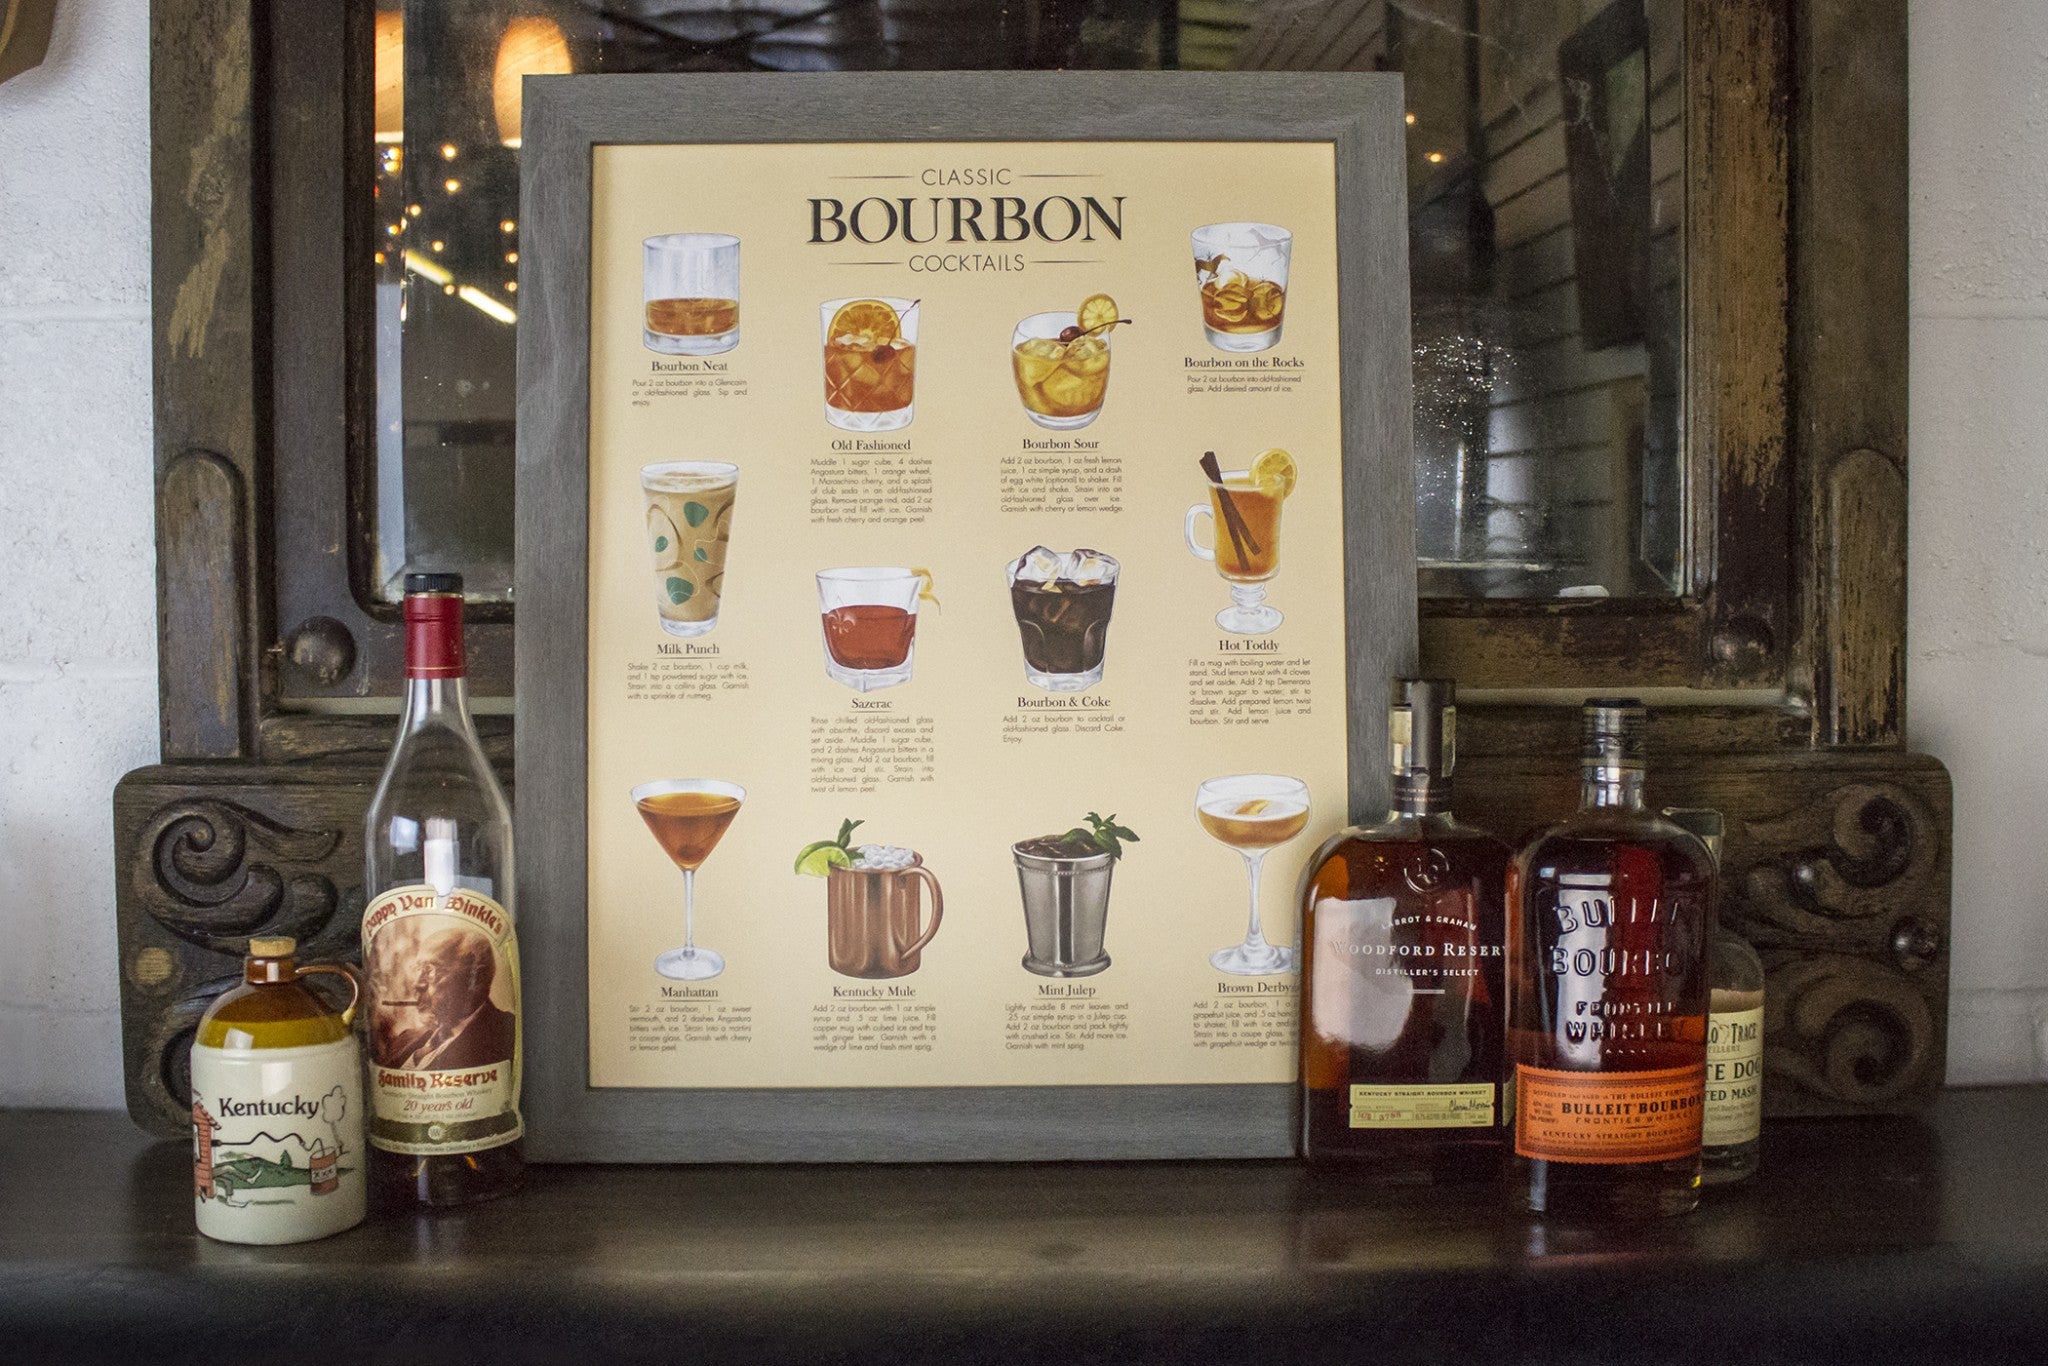 Classic Bourbon Cocktails